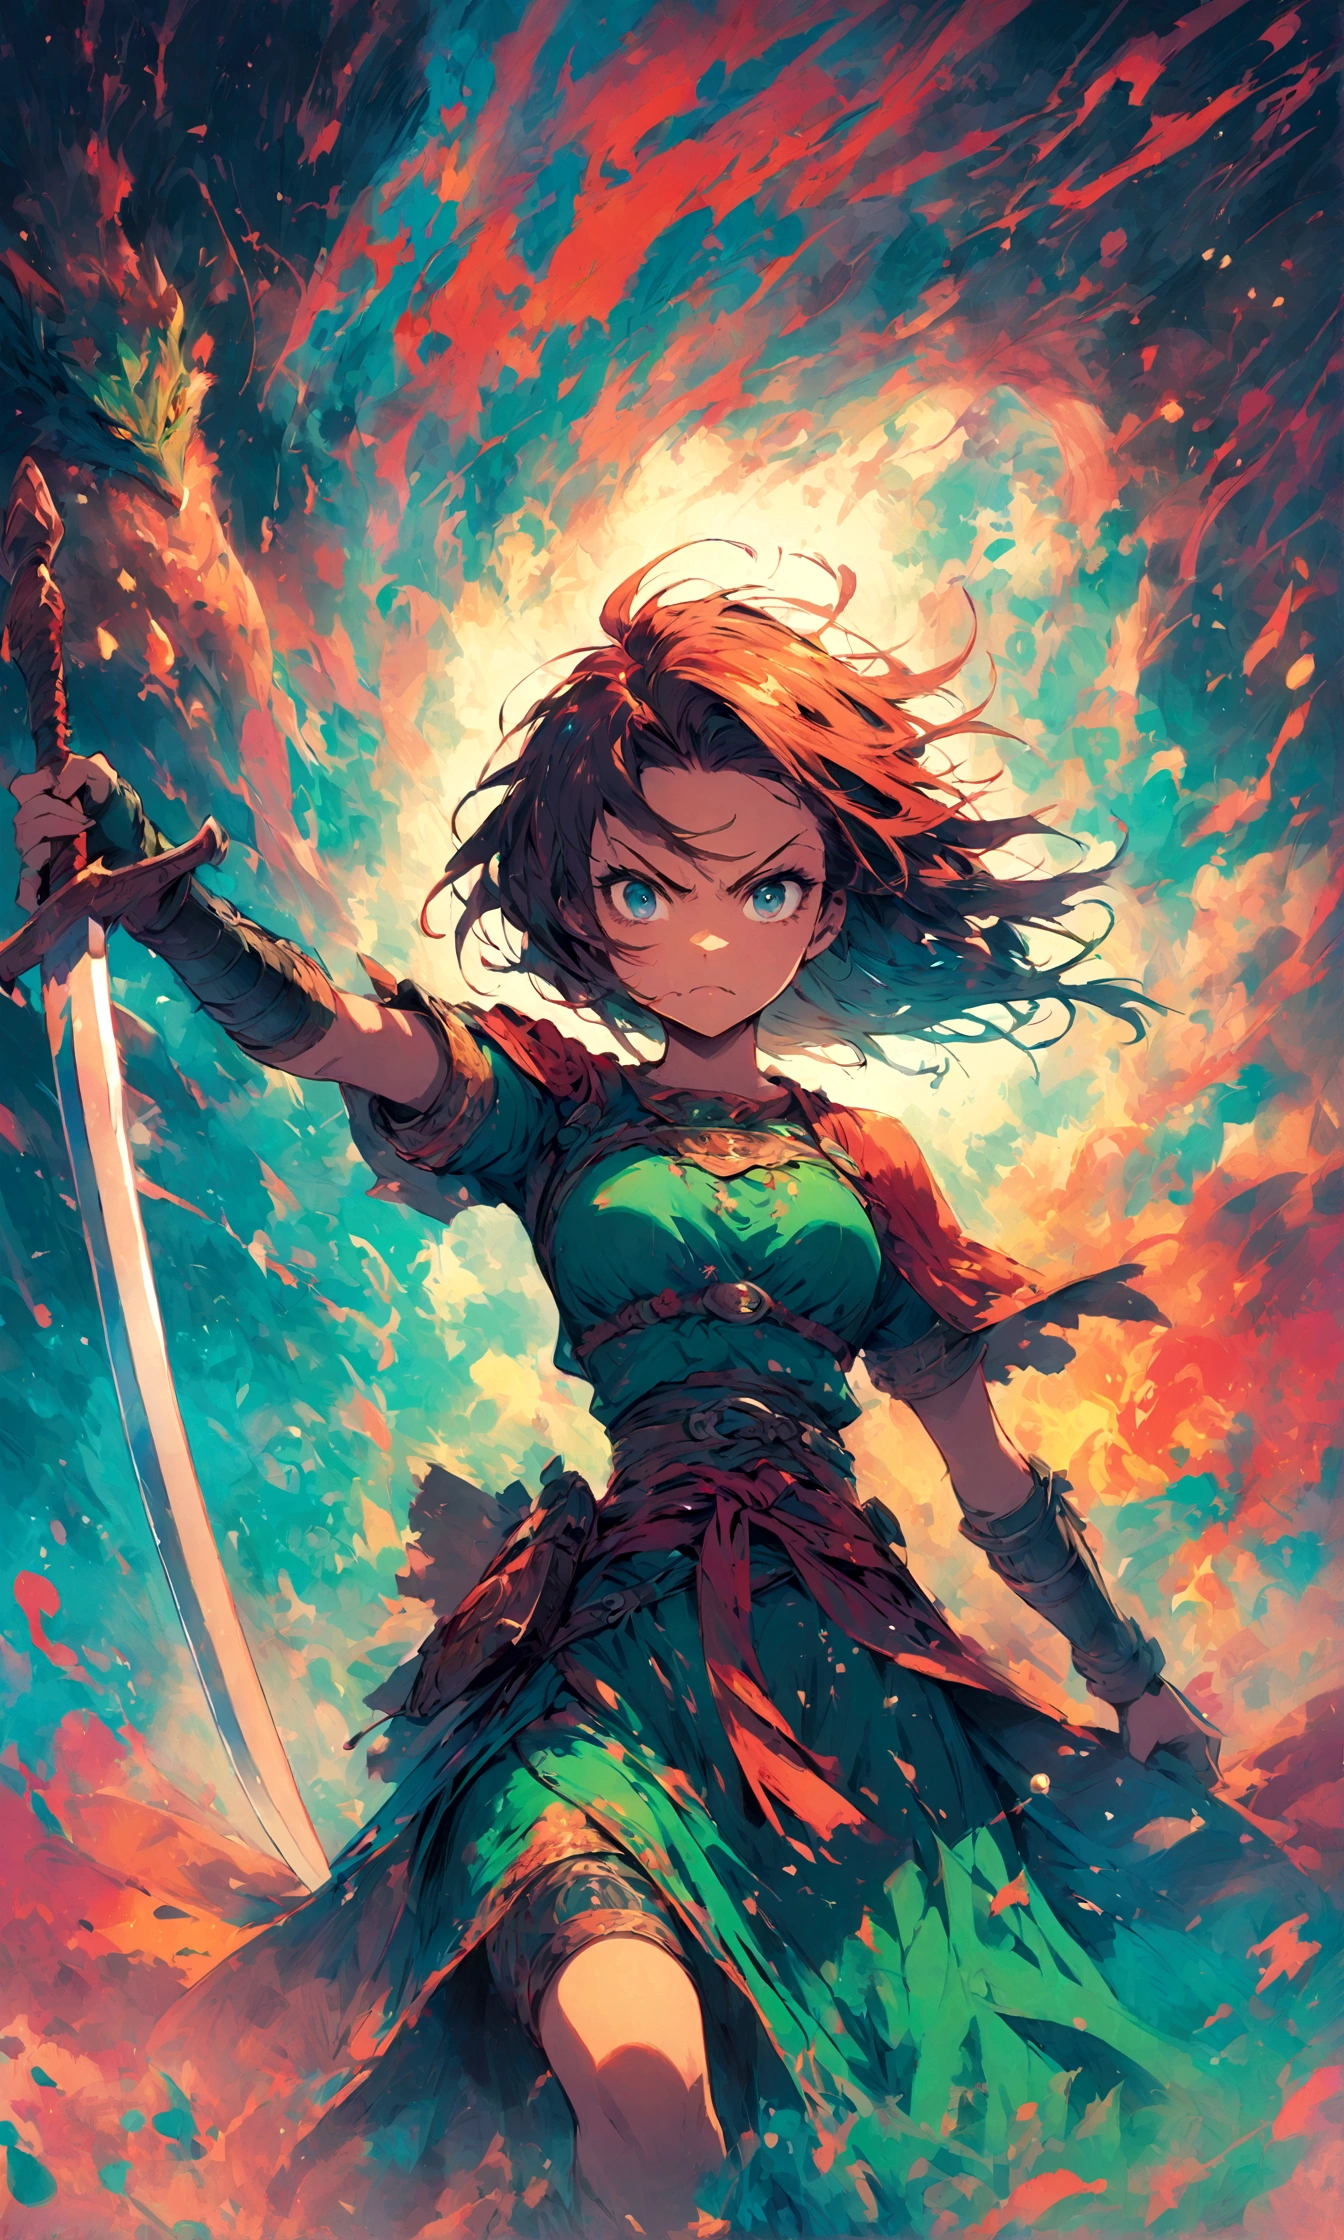 Mulher 1,Mulher guerreira,Ele levanta sua espada e me ataca.,raiva,,Missão do Dragão 3,ilustração pop